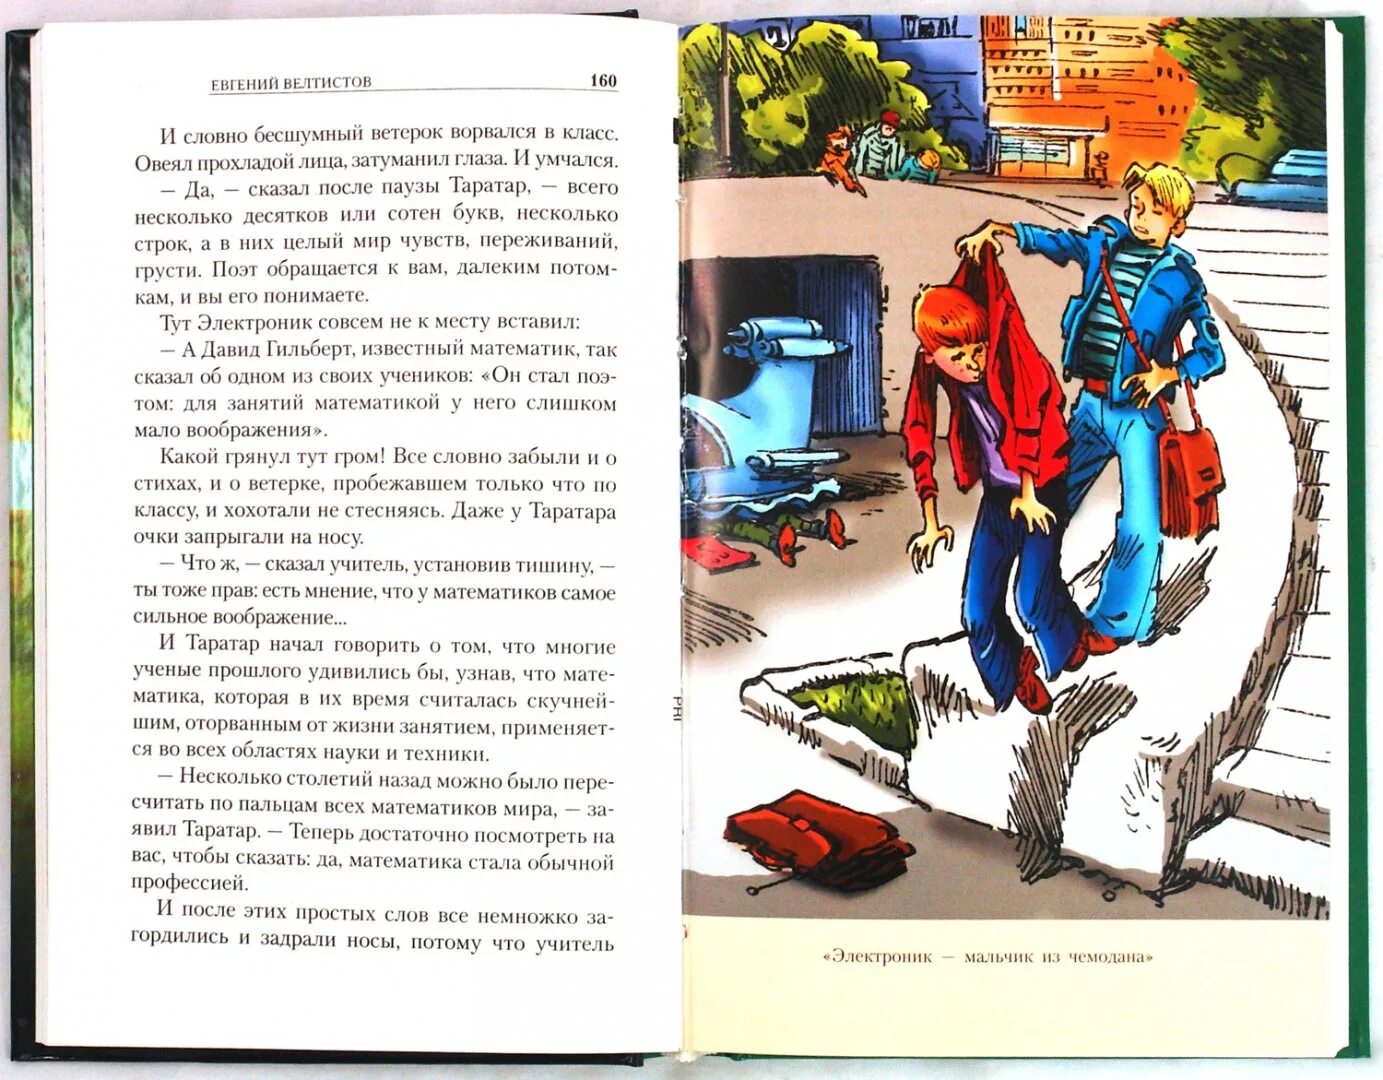 Некоторые эпизоды занятных рассказов из жизни. Иллюстрации к книге Велтистова электроник. Книга Велтистова приключения Алисы.